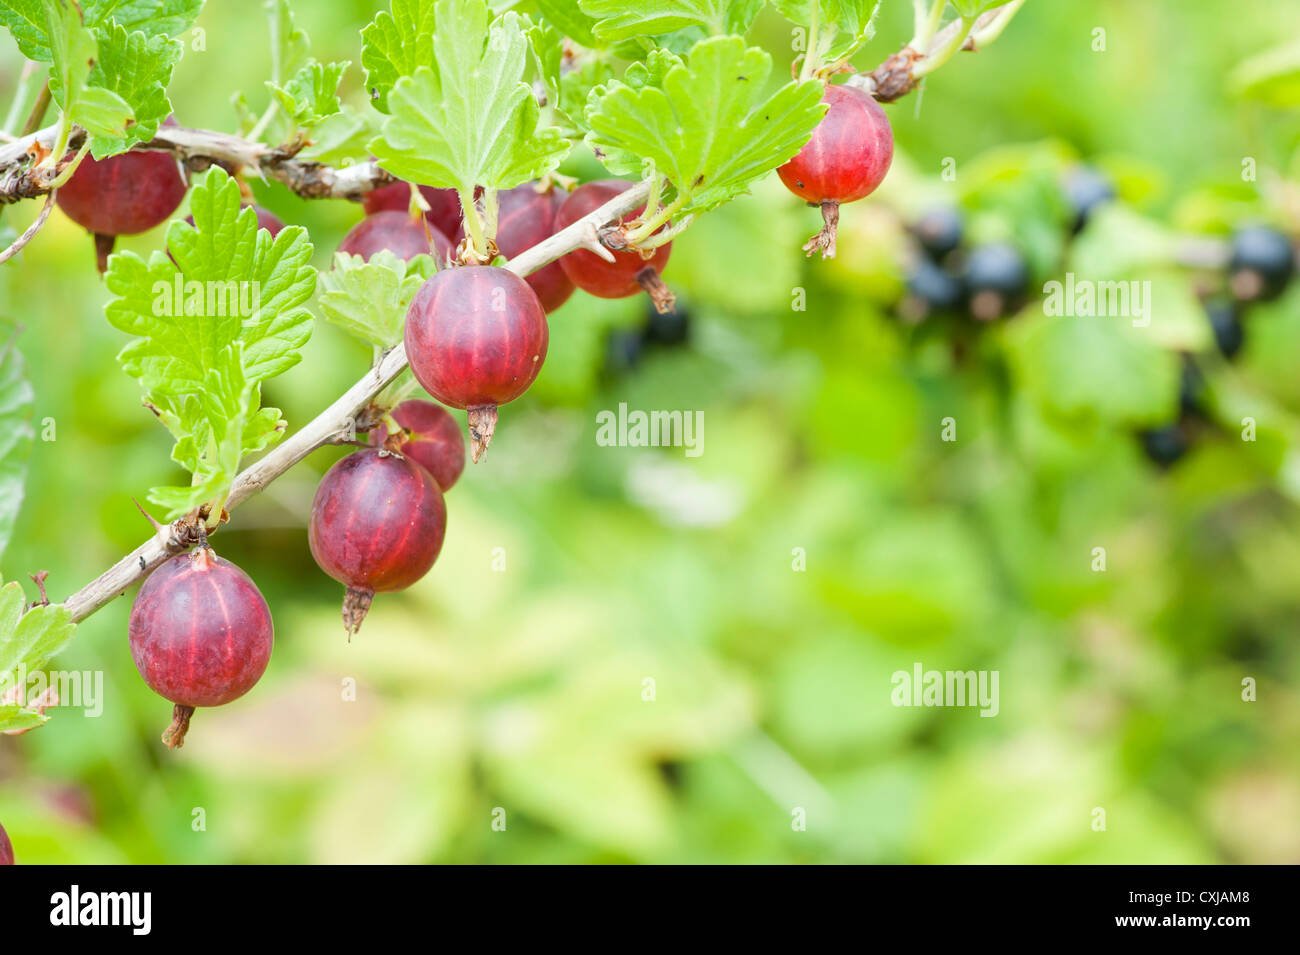 Uva spina impianto in giardino con frutti pendenti da rami Foto Stock